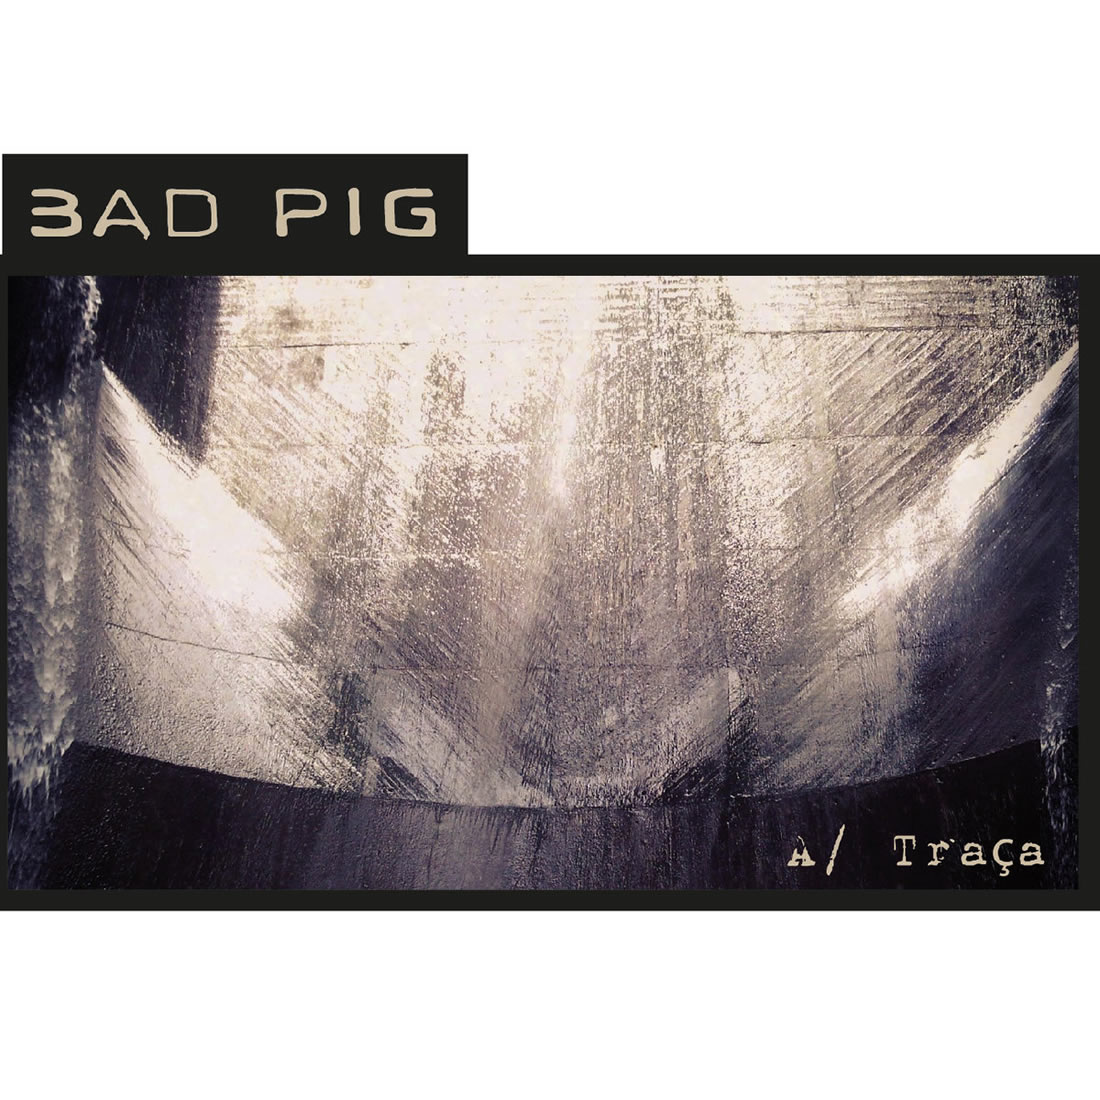 Bad Pig – “Enforca Cães”